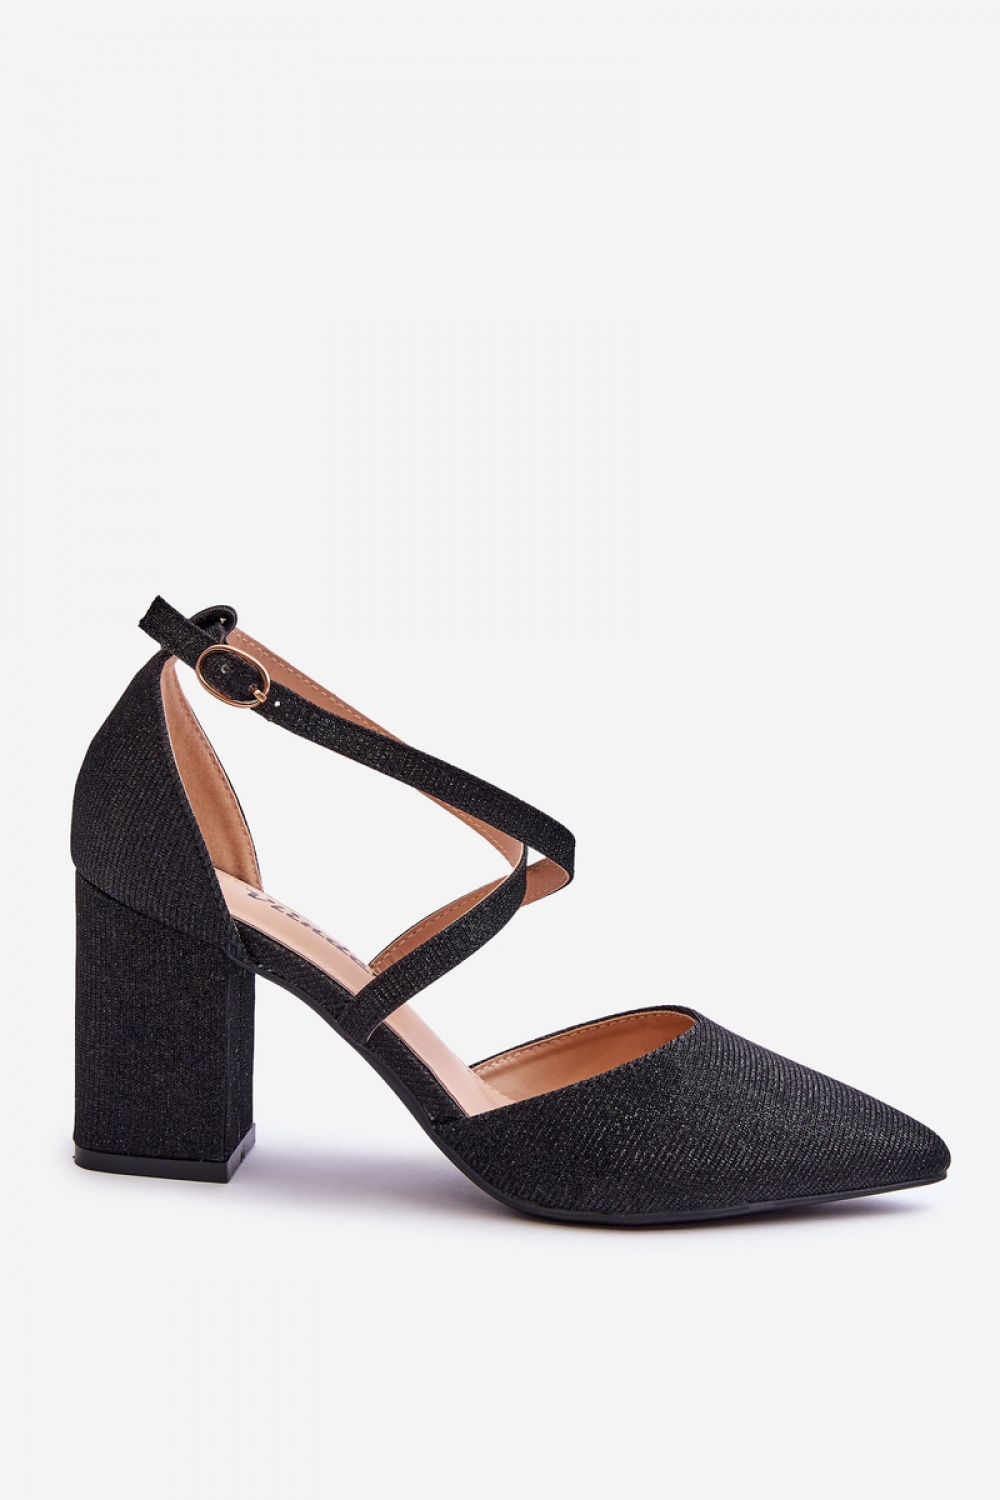  Block heel pumps model 181453 Step in style  black